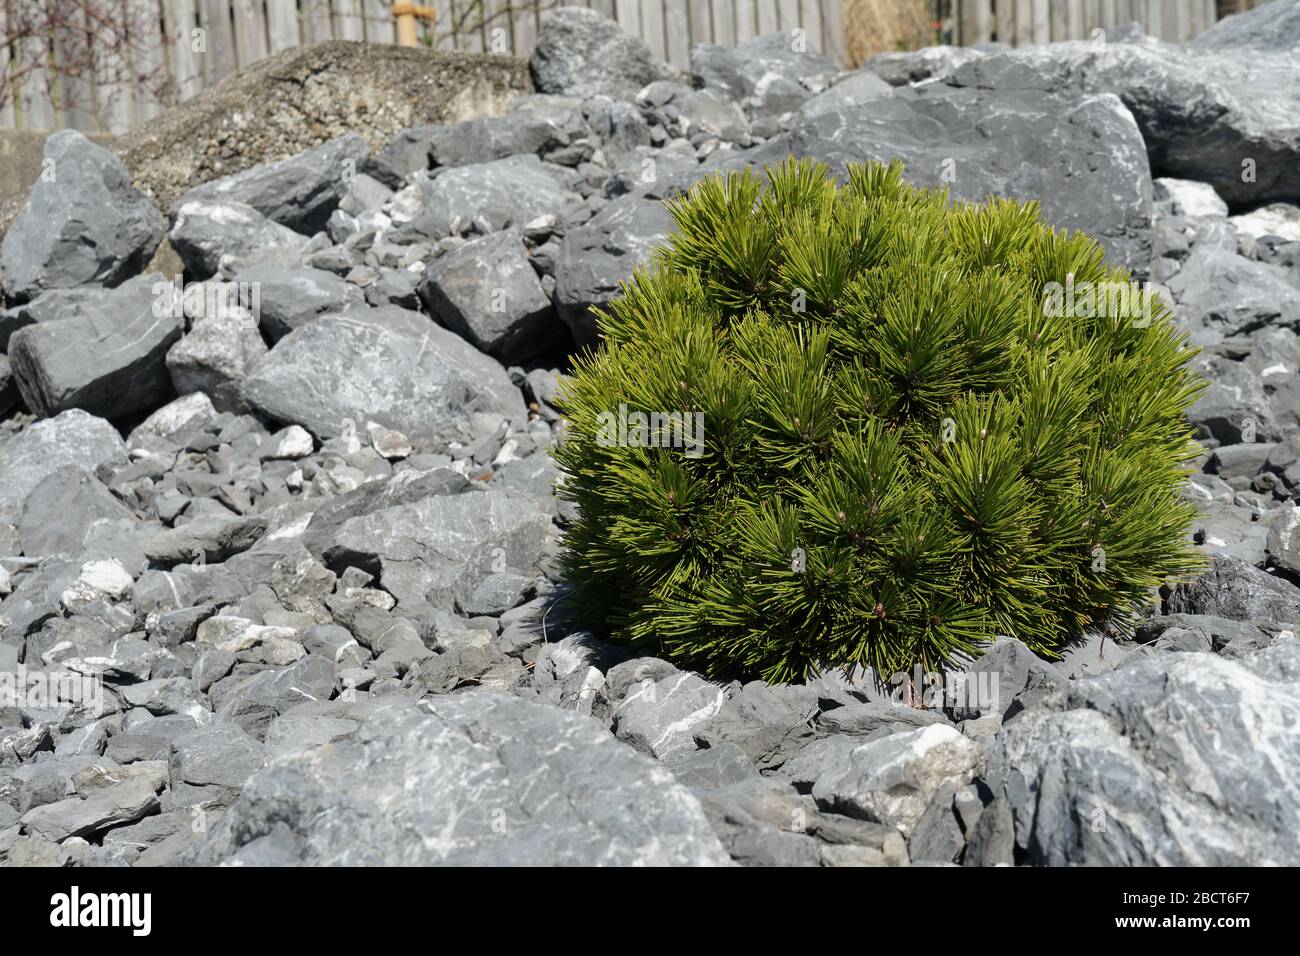 pino enquendo en forma de esfera plantada en un jardín de rocas. Especies leñosas decorativas en una forma inusual. Foto de stock